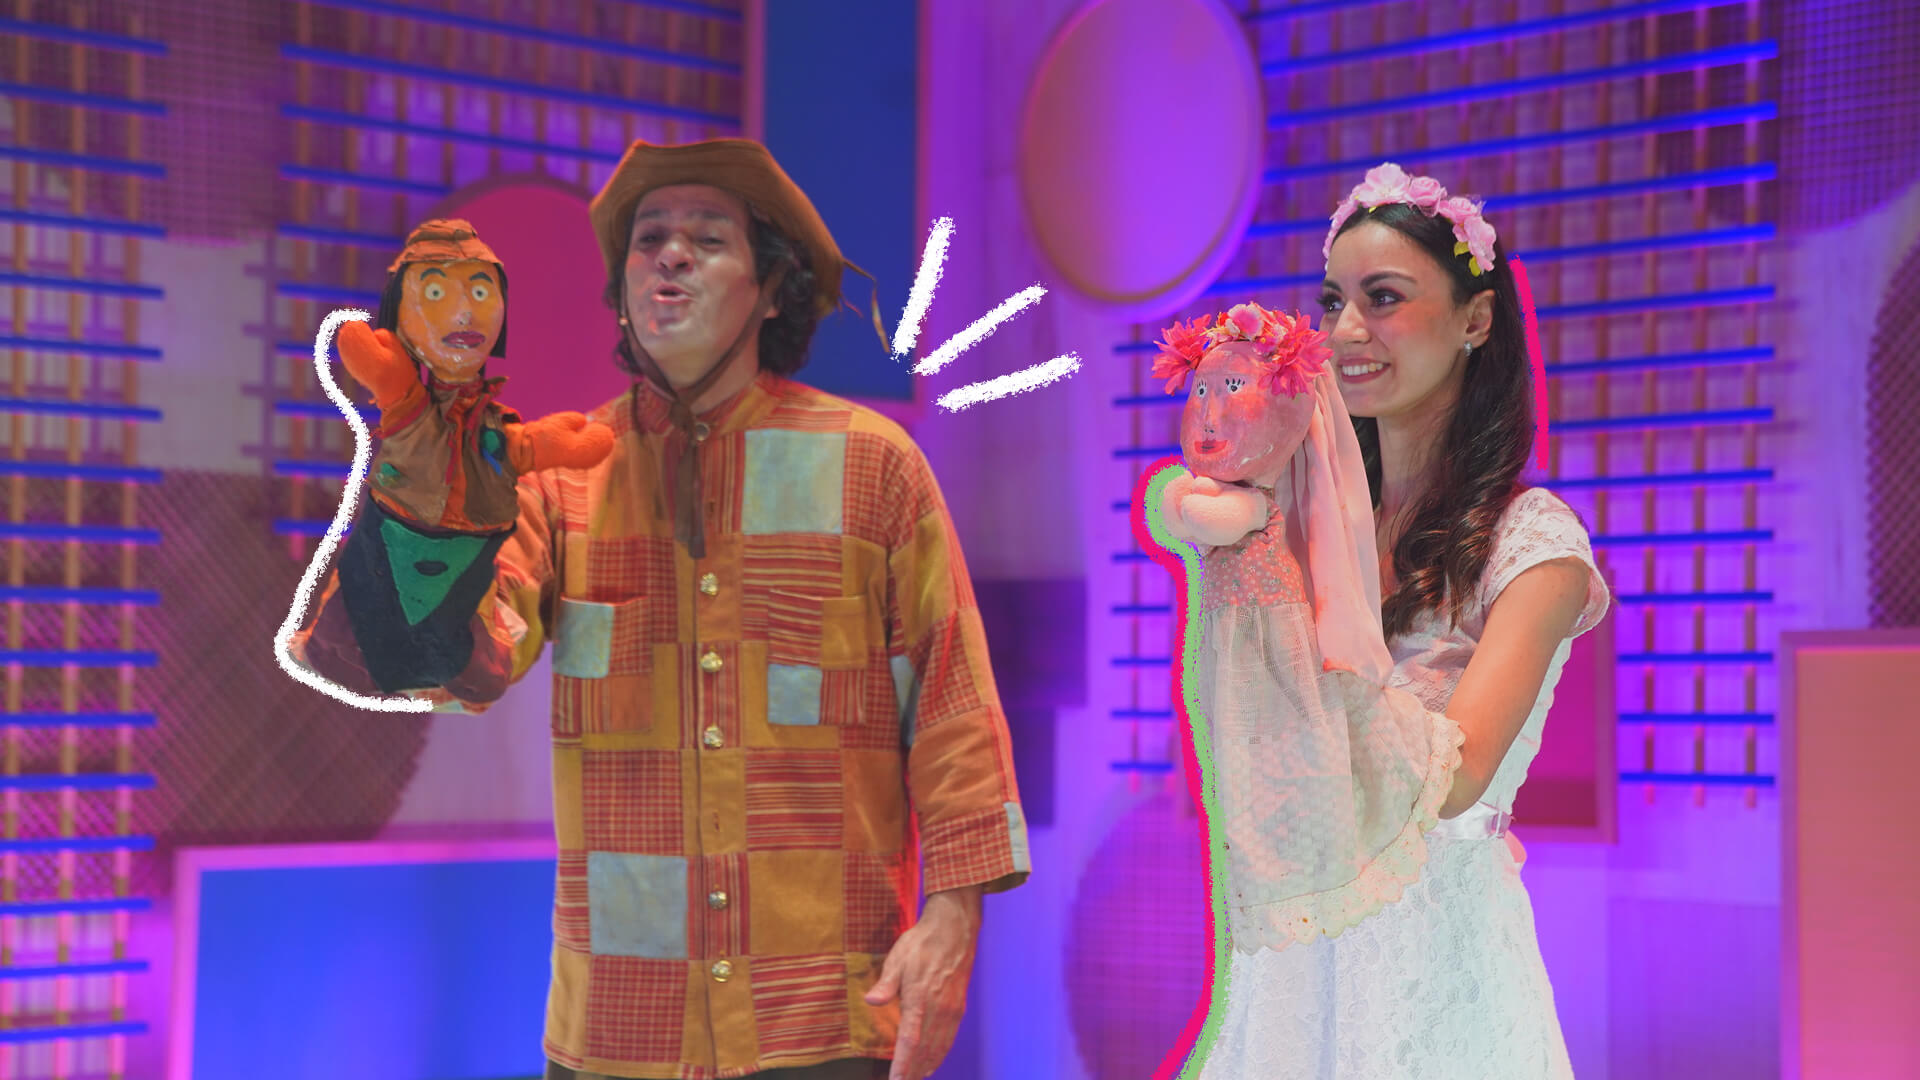 Na foto, um ator e uma atriz, ambos de pele clara, sorriem enquanto realizam show teatral com bonecos